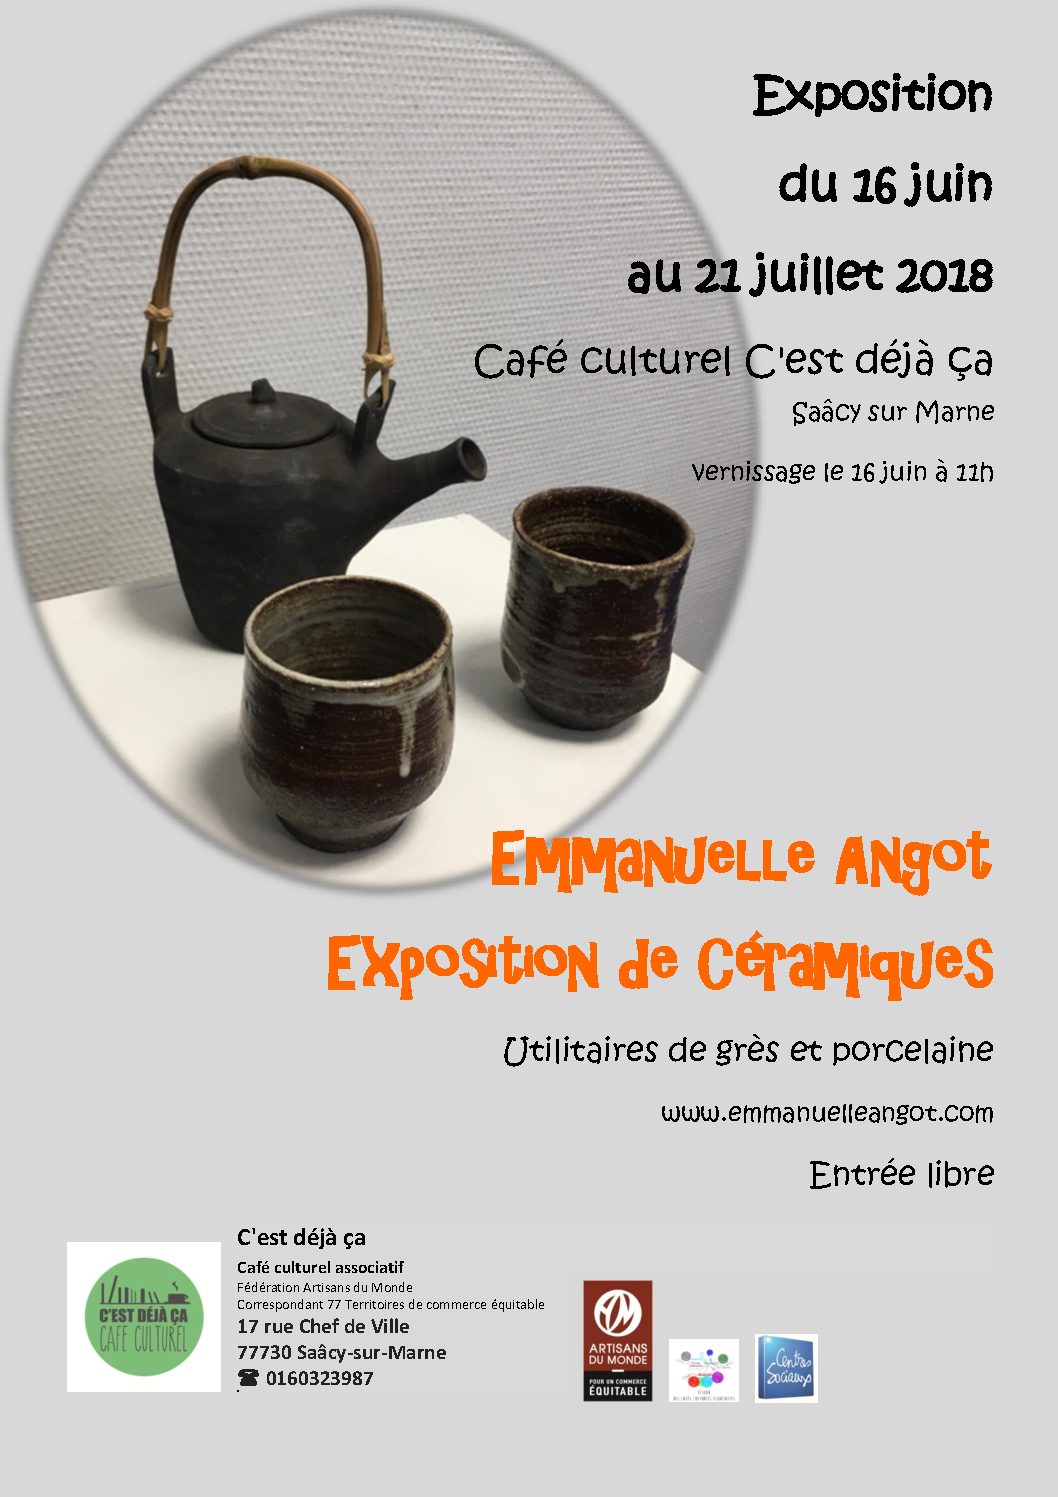 Exposition de début d’été en Seine-et-Marne 16/06 – 21/07 2018